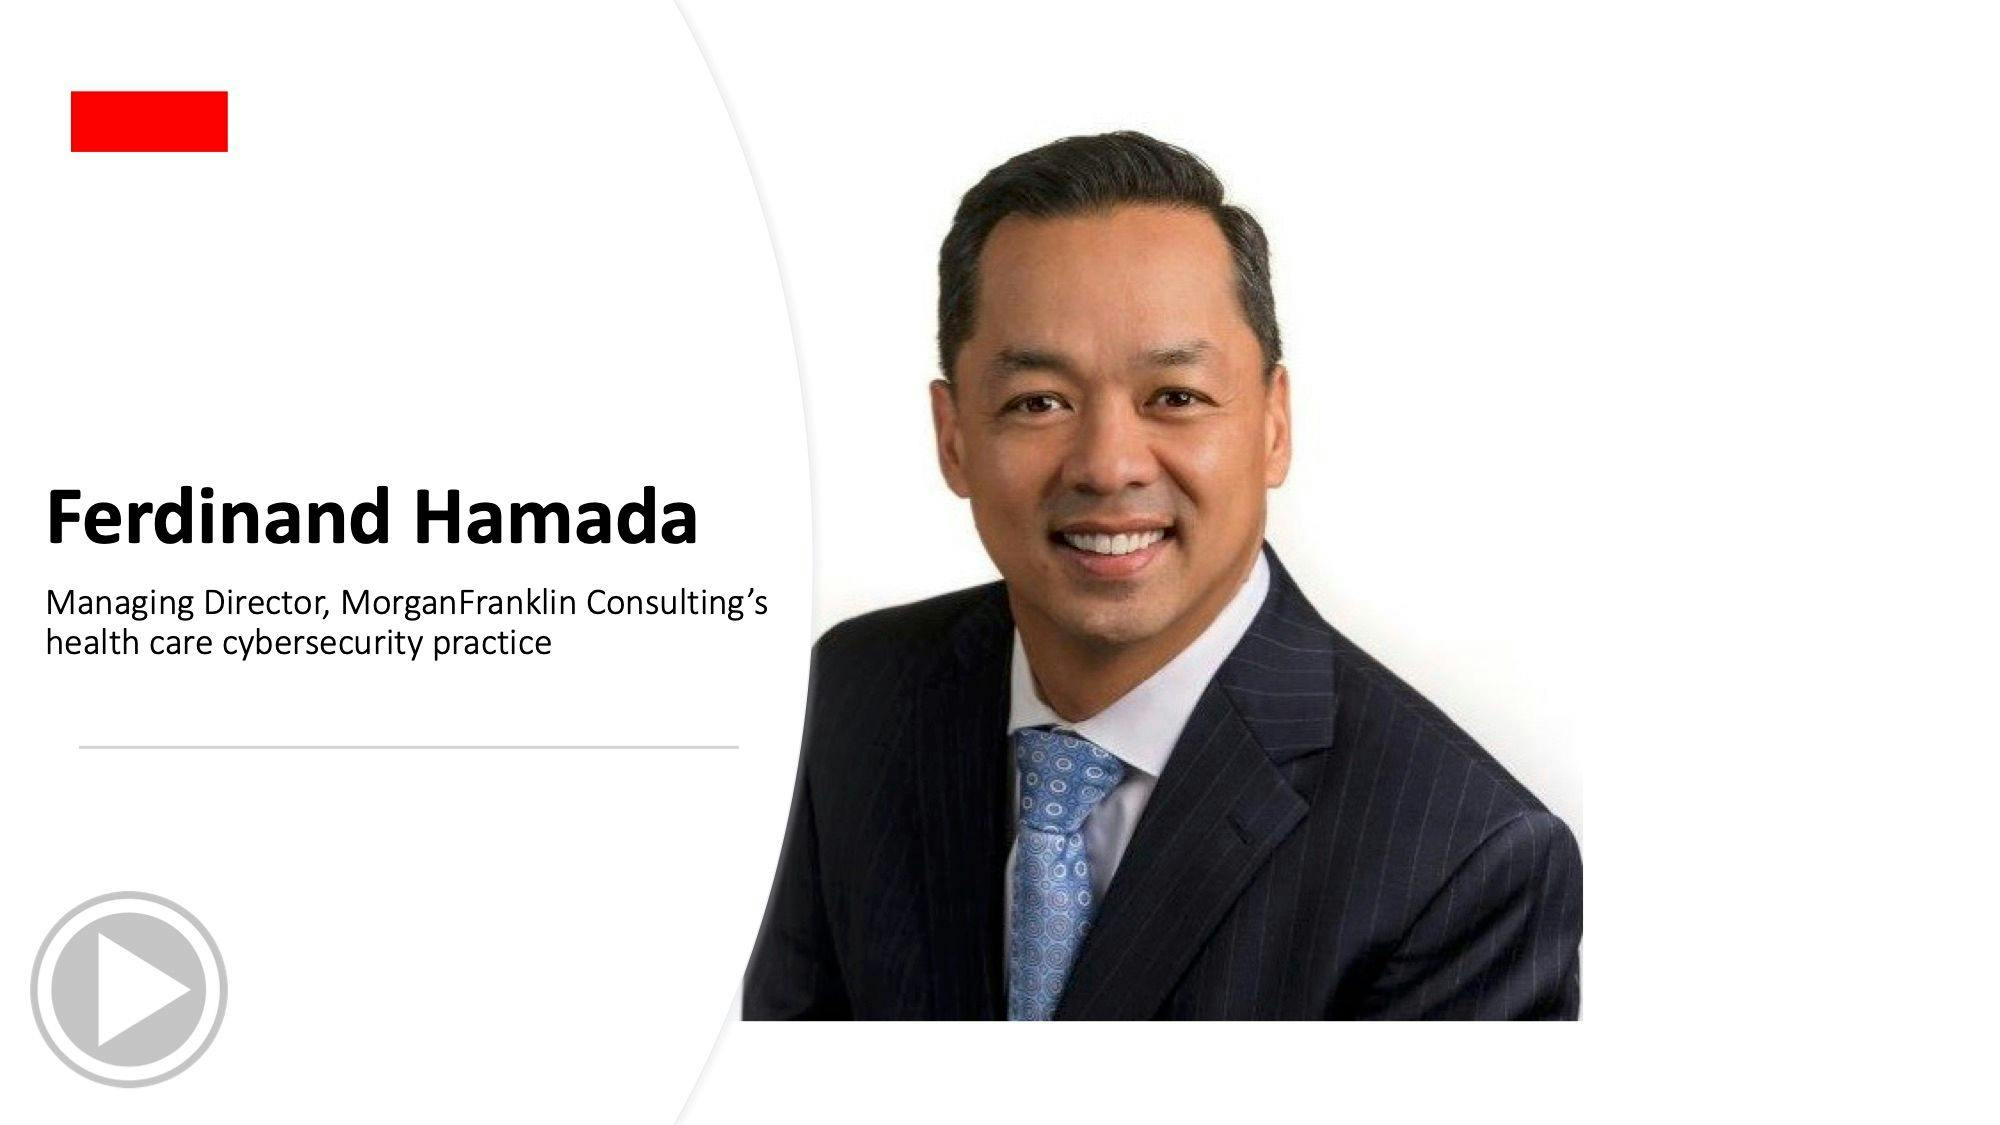 Ferdinand Hamada gives expert advice